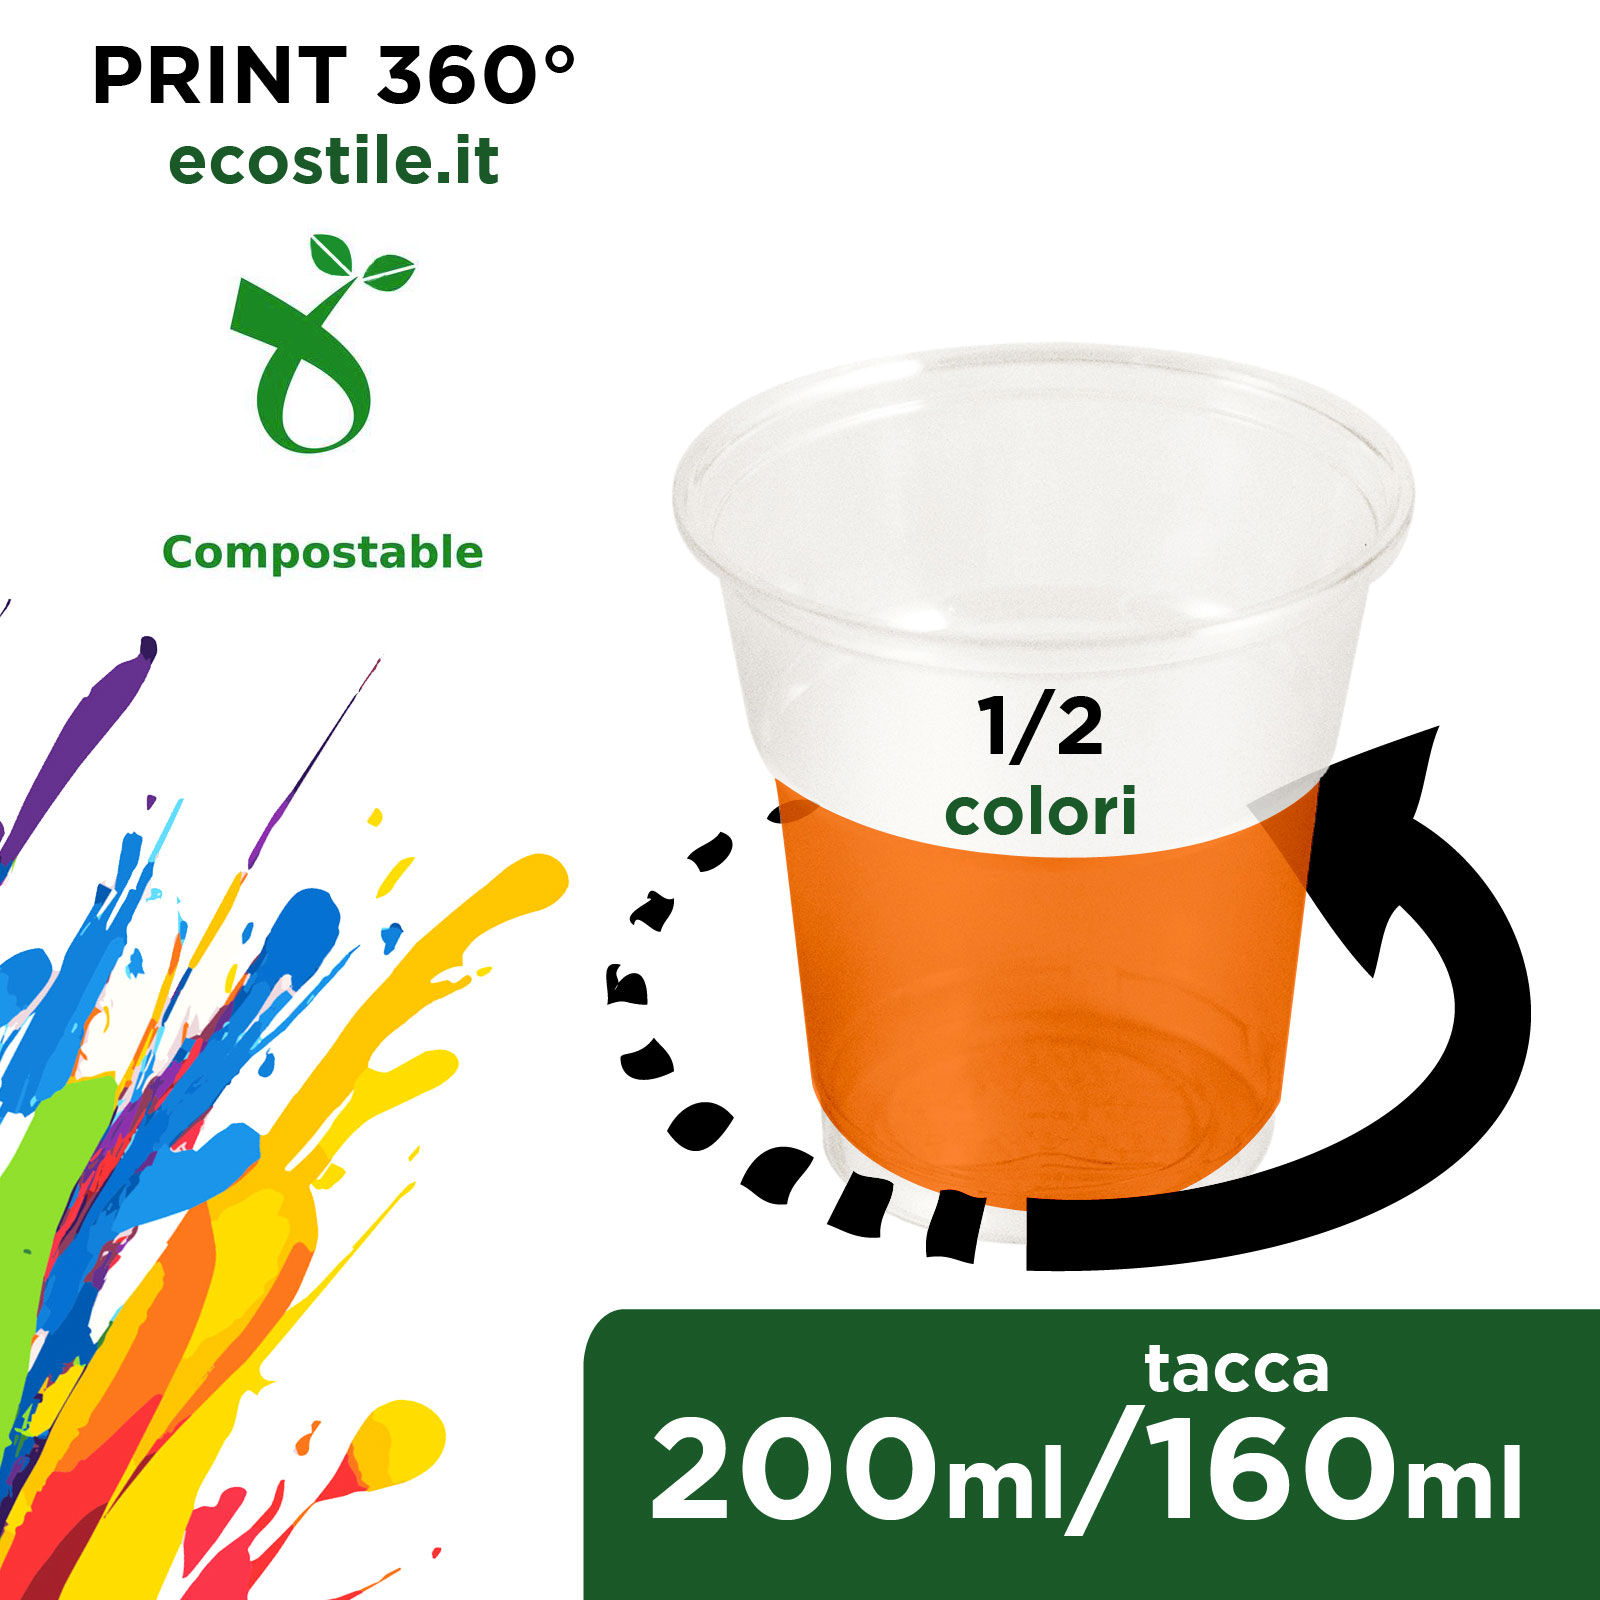 Bicchieri Biodegradabili - 200ml Stampa all over 1/2 colori - Ecostile